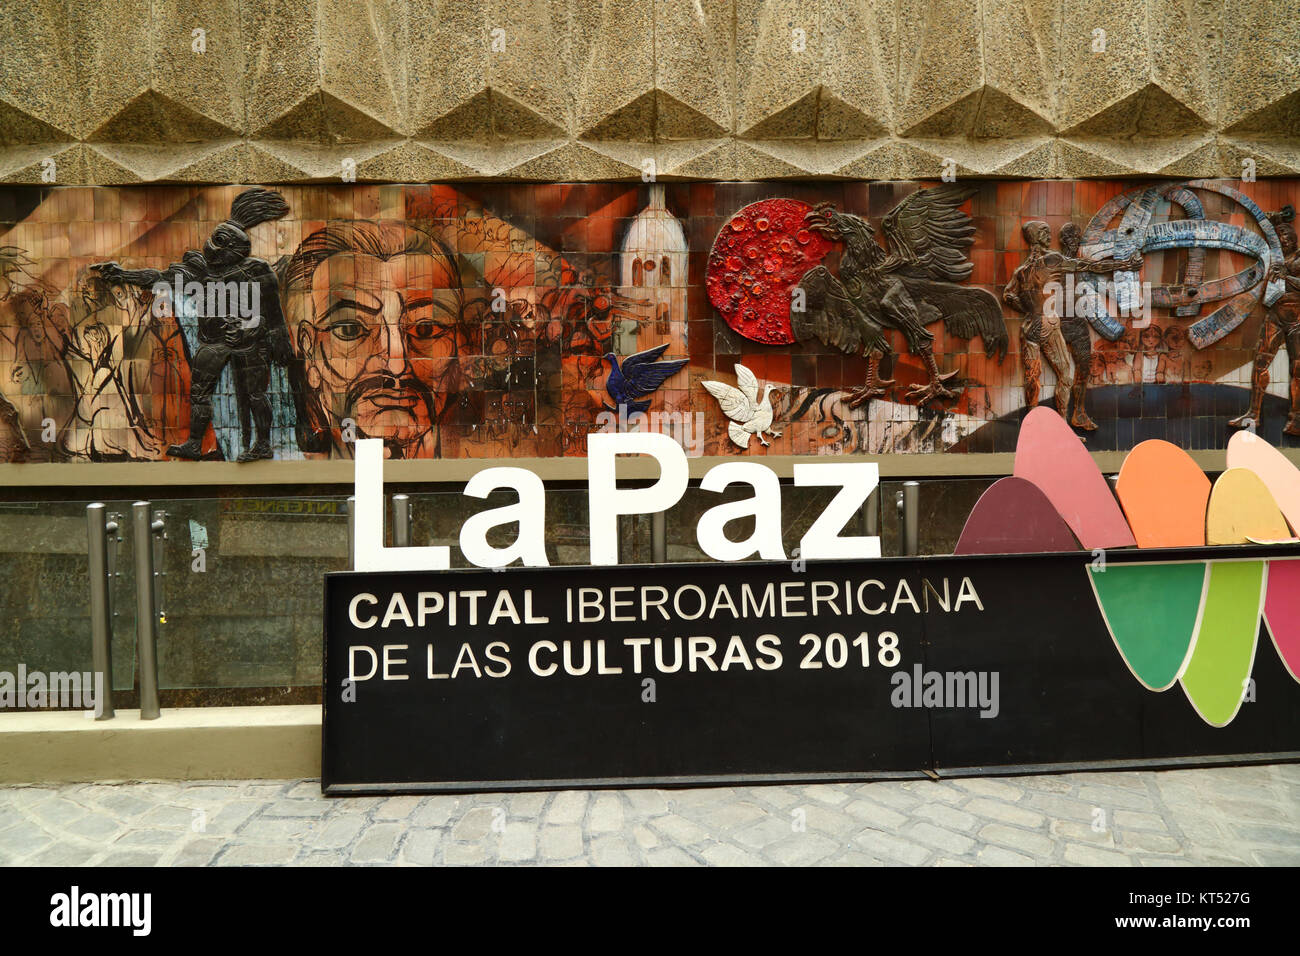 Mural dietro la Casa de Cultura e iberoamericano sulle capitali della cultura 2018 segno, La Paz, Bolivia Foto Stock